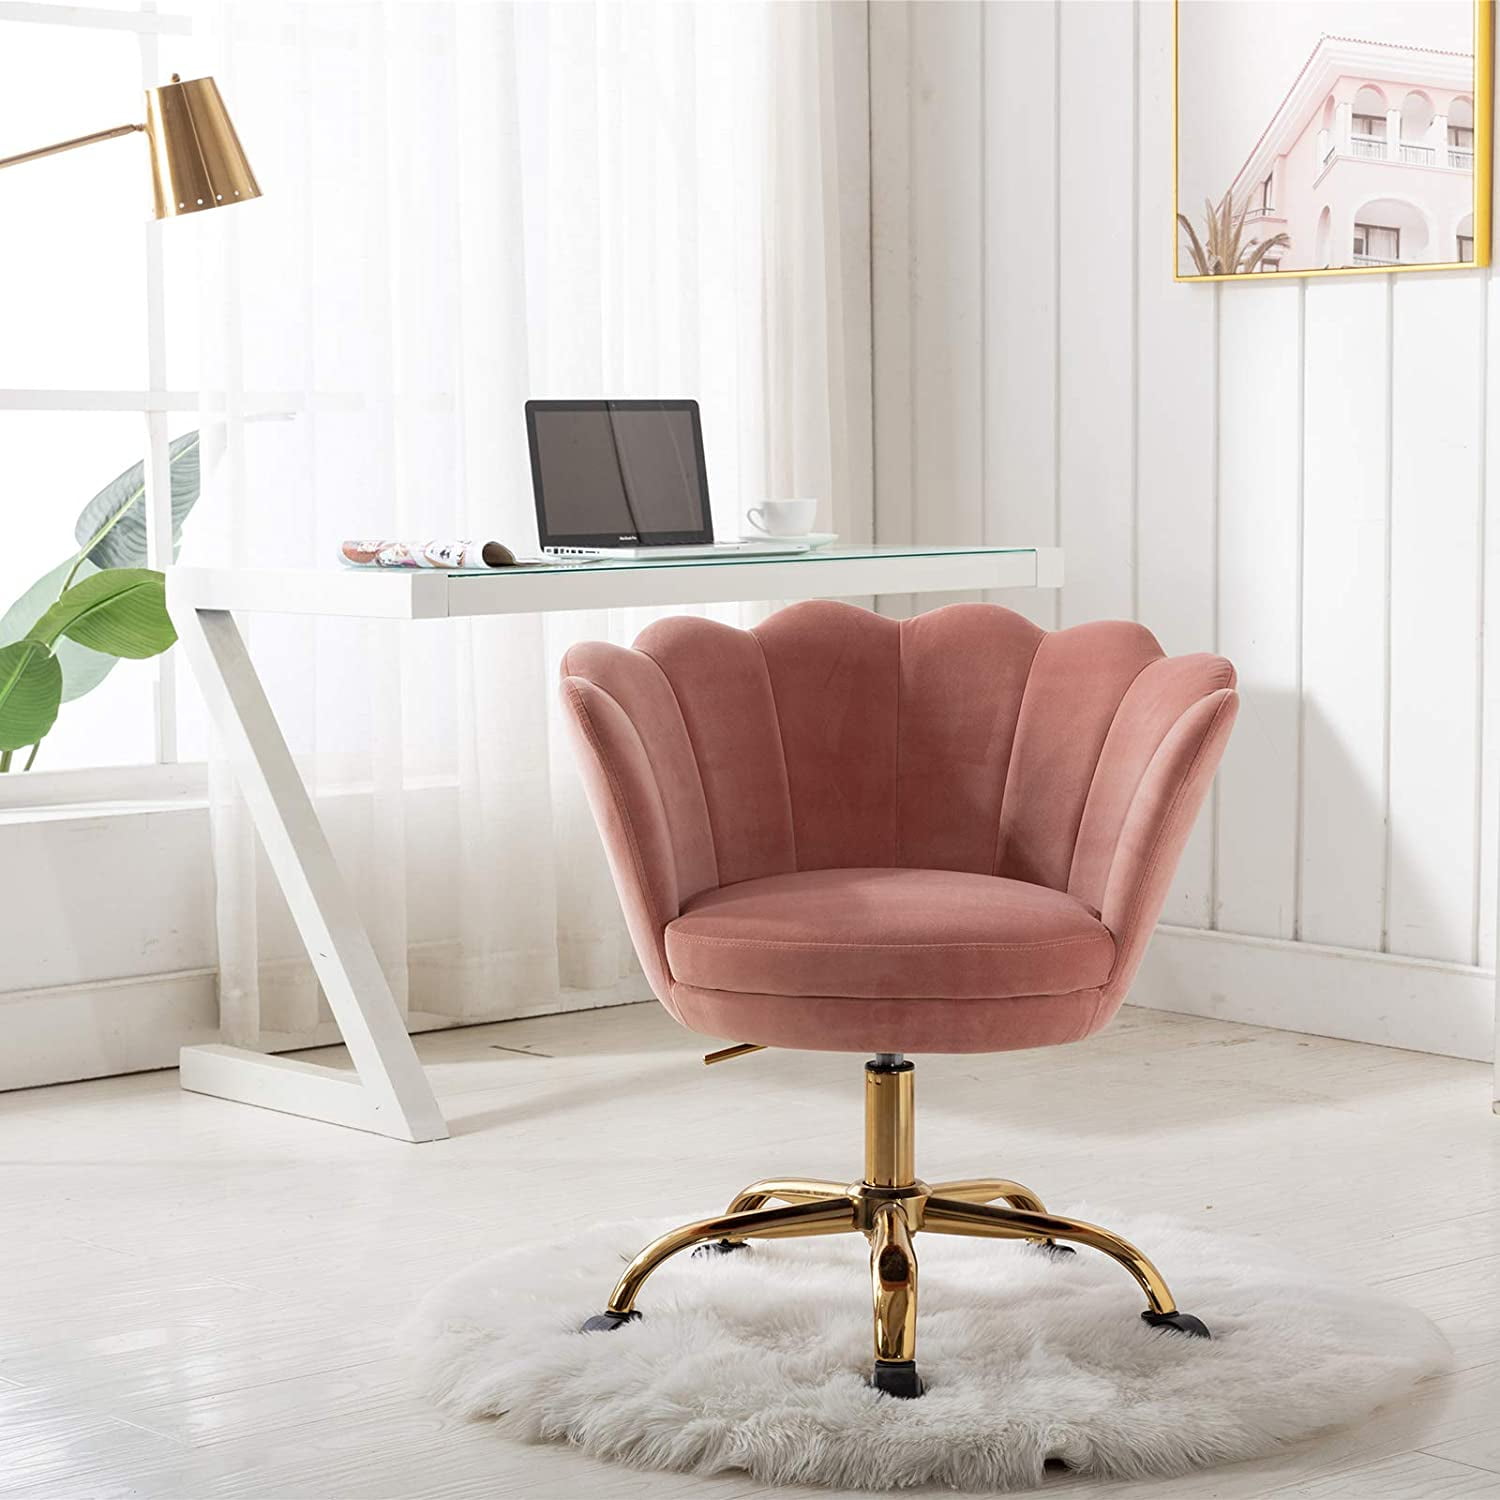 Bedroom Cute Desk Chairs For Girls - Ovios Cute Desk Chair Plush Velvet